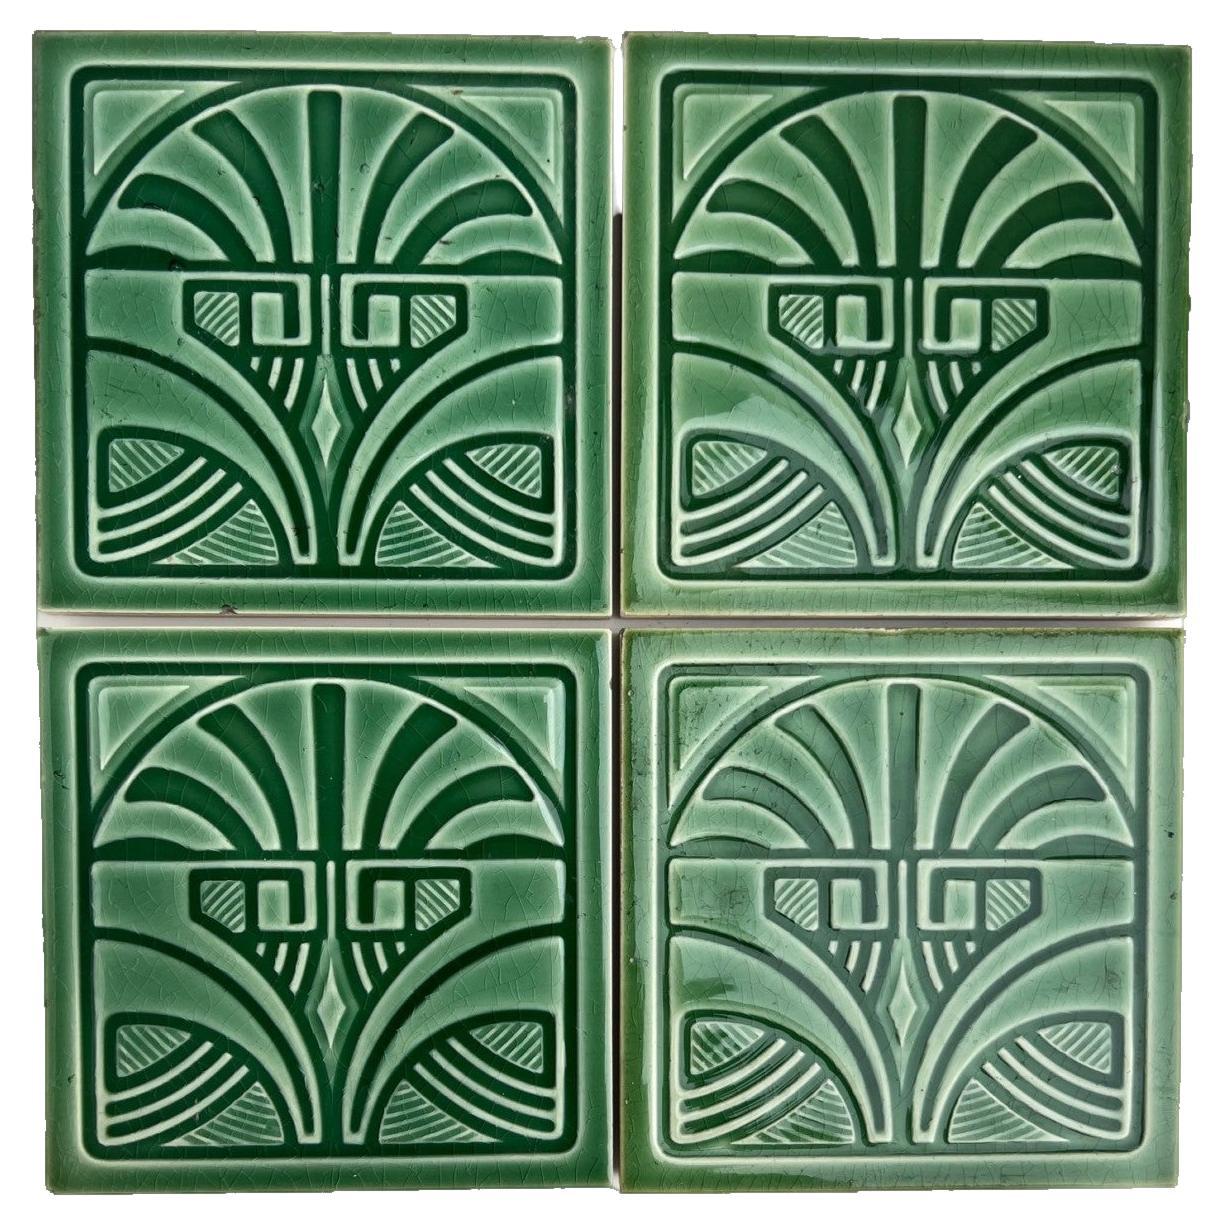 1 of the 45 Green Art Deco Glazed Relief Tiles by Deutsche Steingutfabrik, 1960s